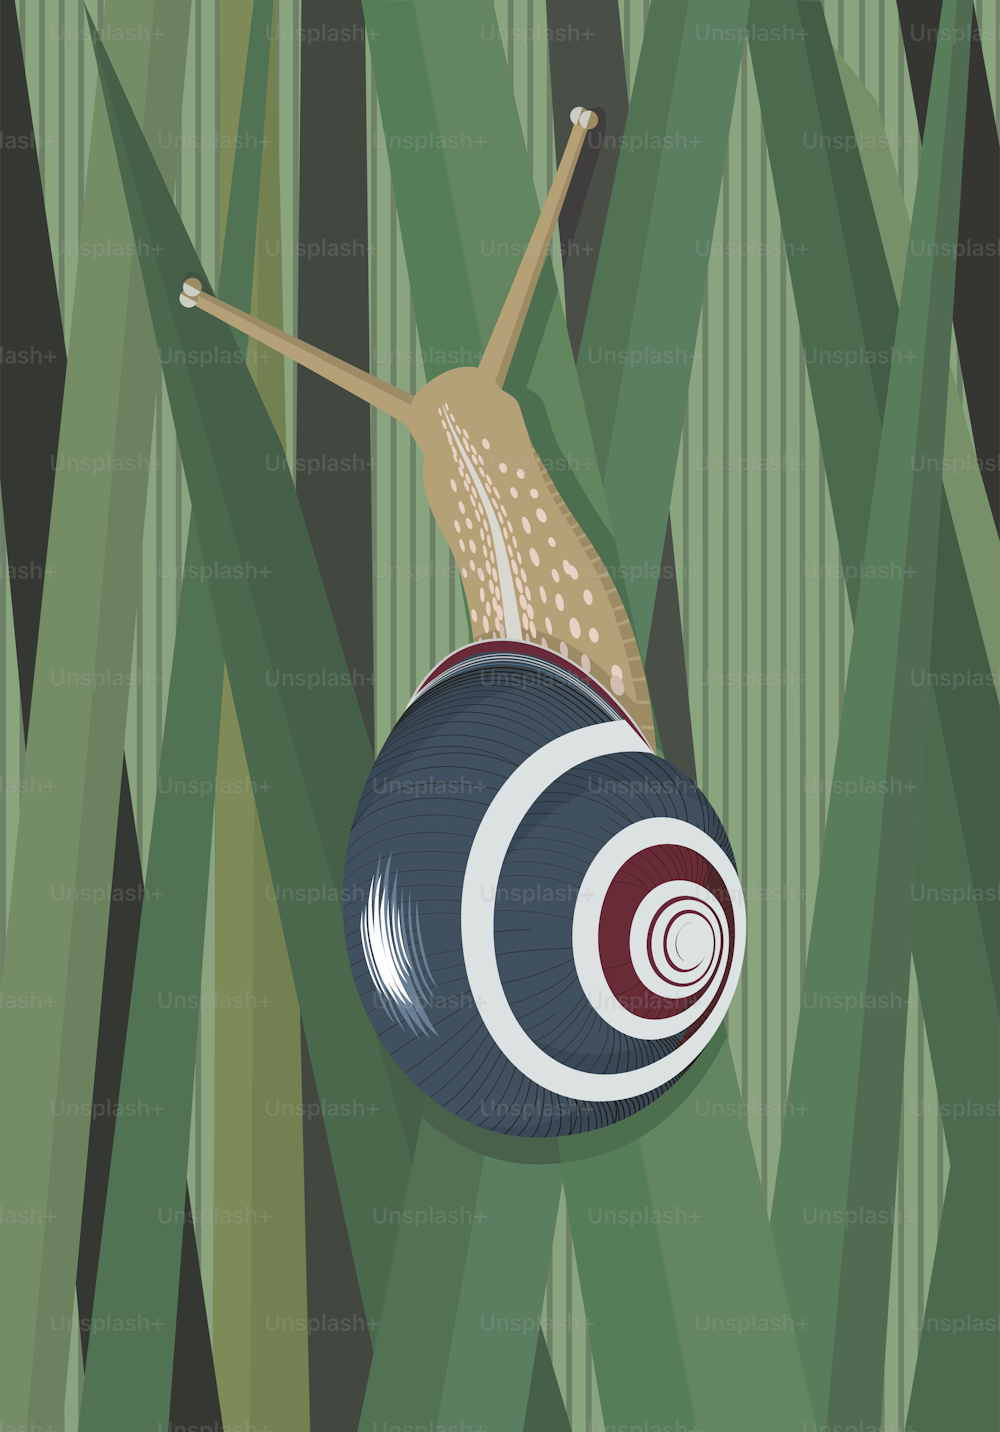 Snail climbs up the stalks of grass